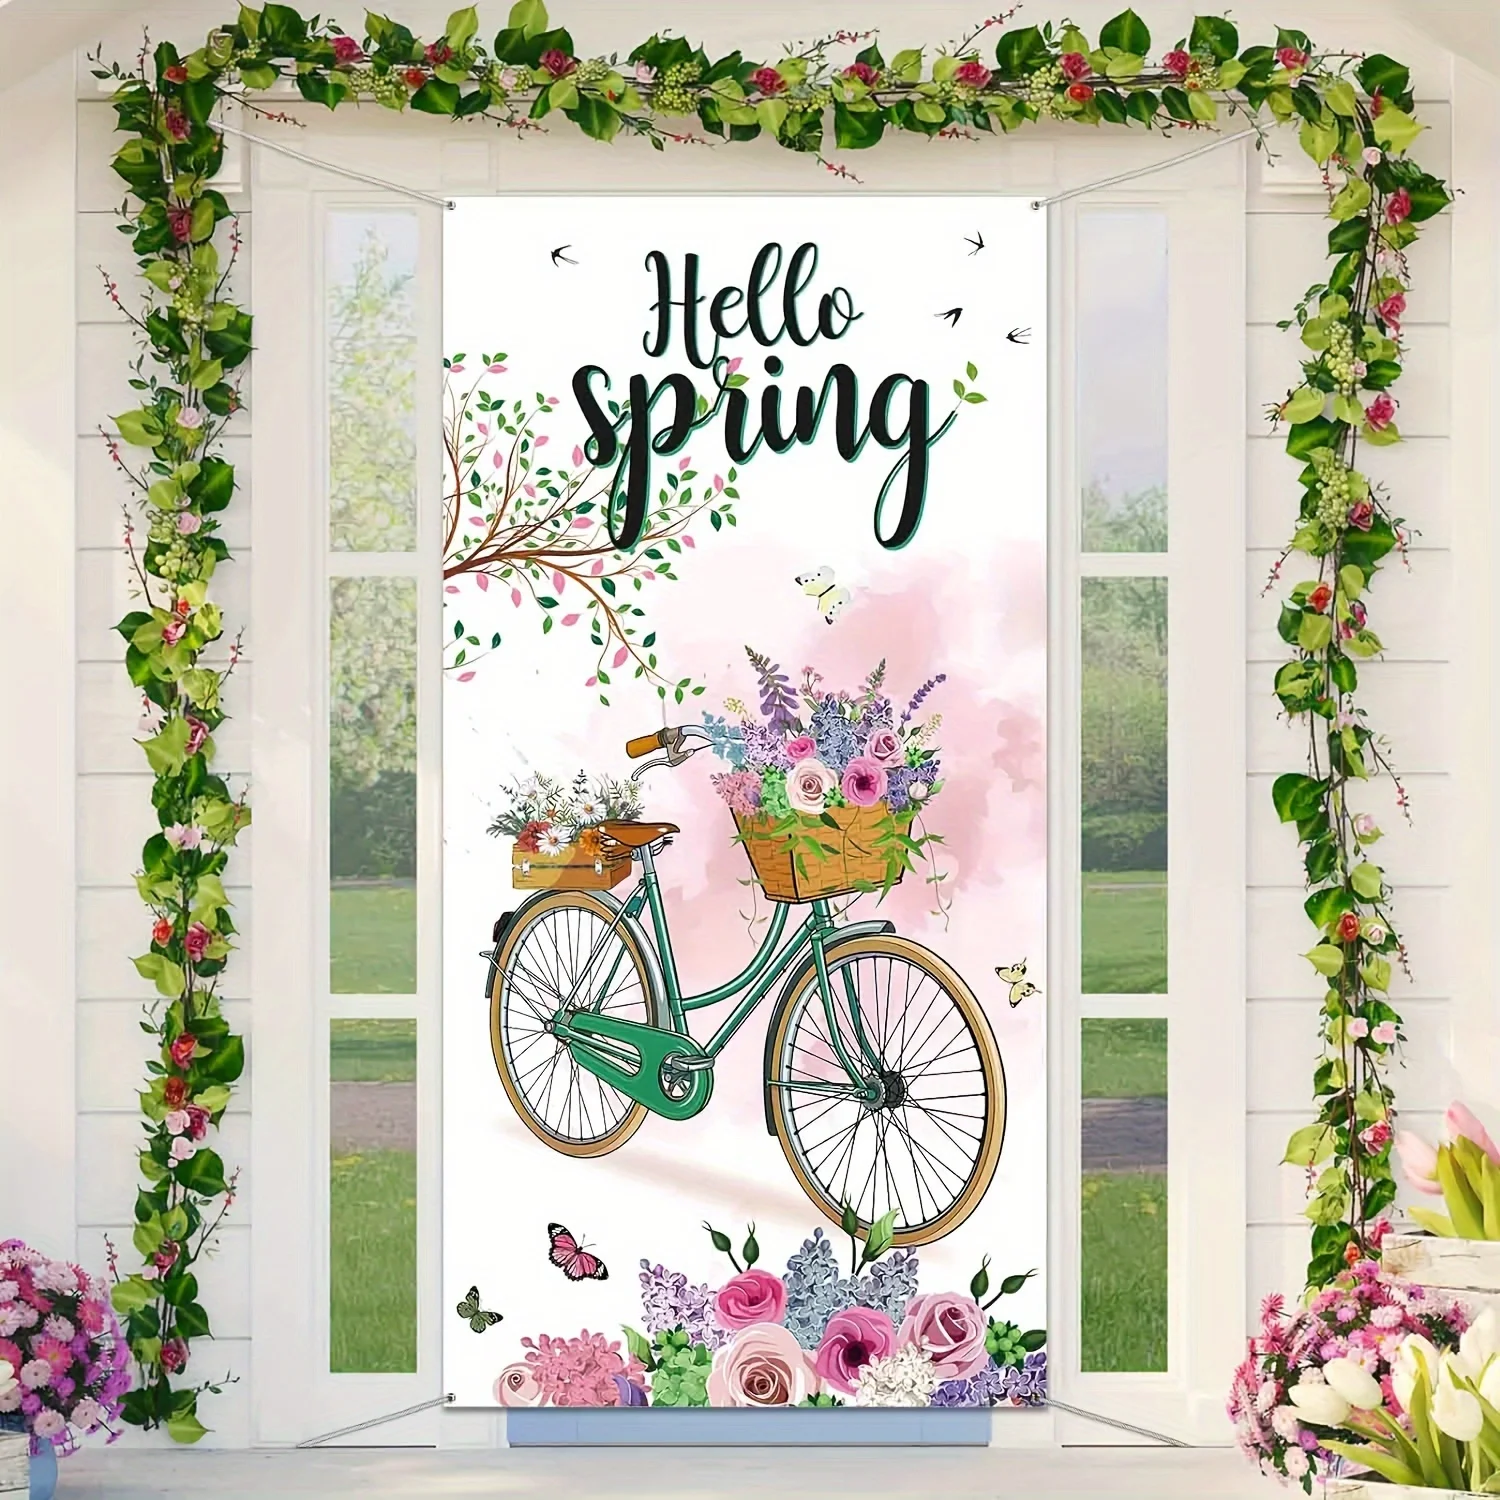 90 * 180 см Hello Winter Welcome крышка двери баннер, фон украшения зимней вечеринки, цветочный баннер велосипеда